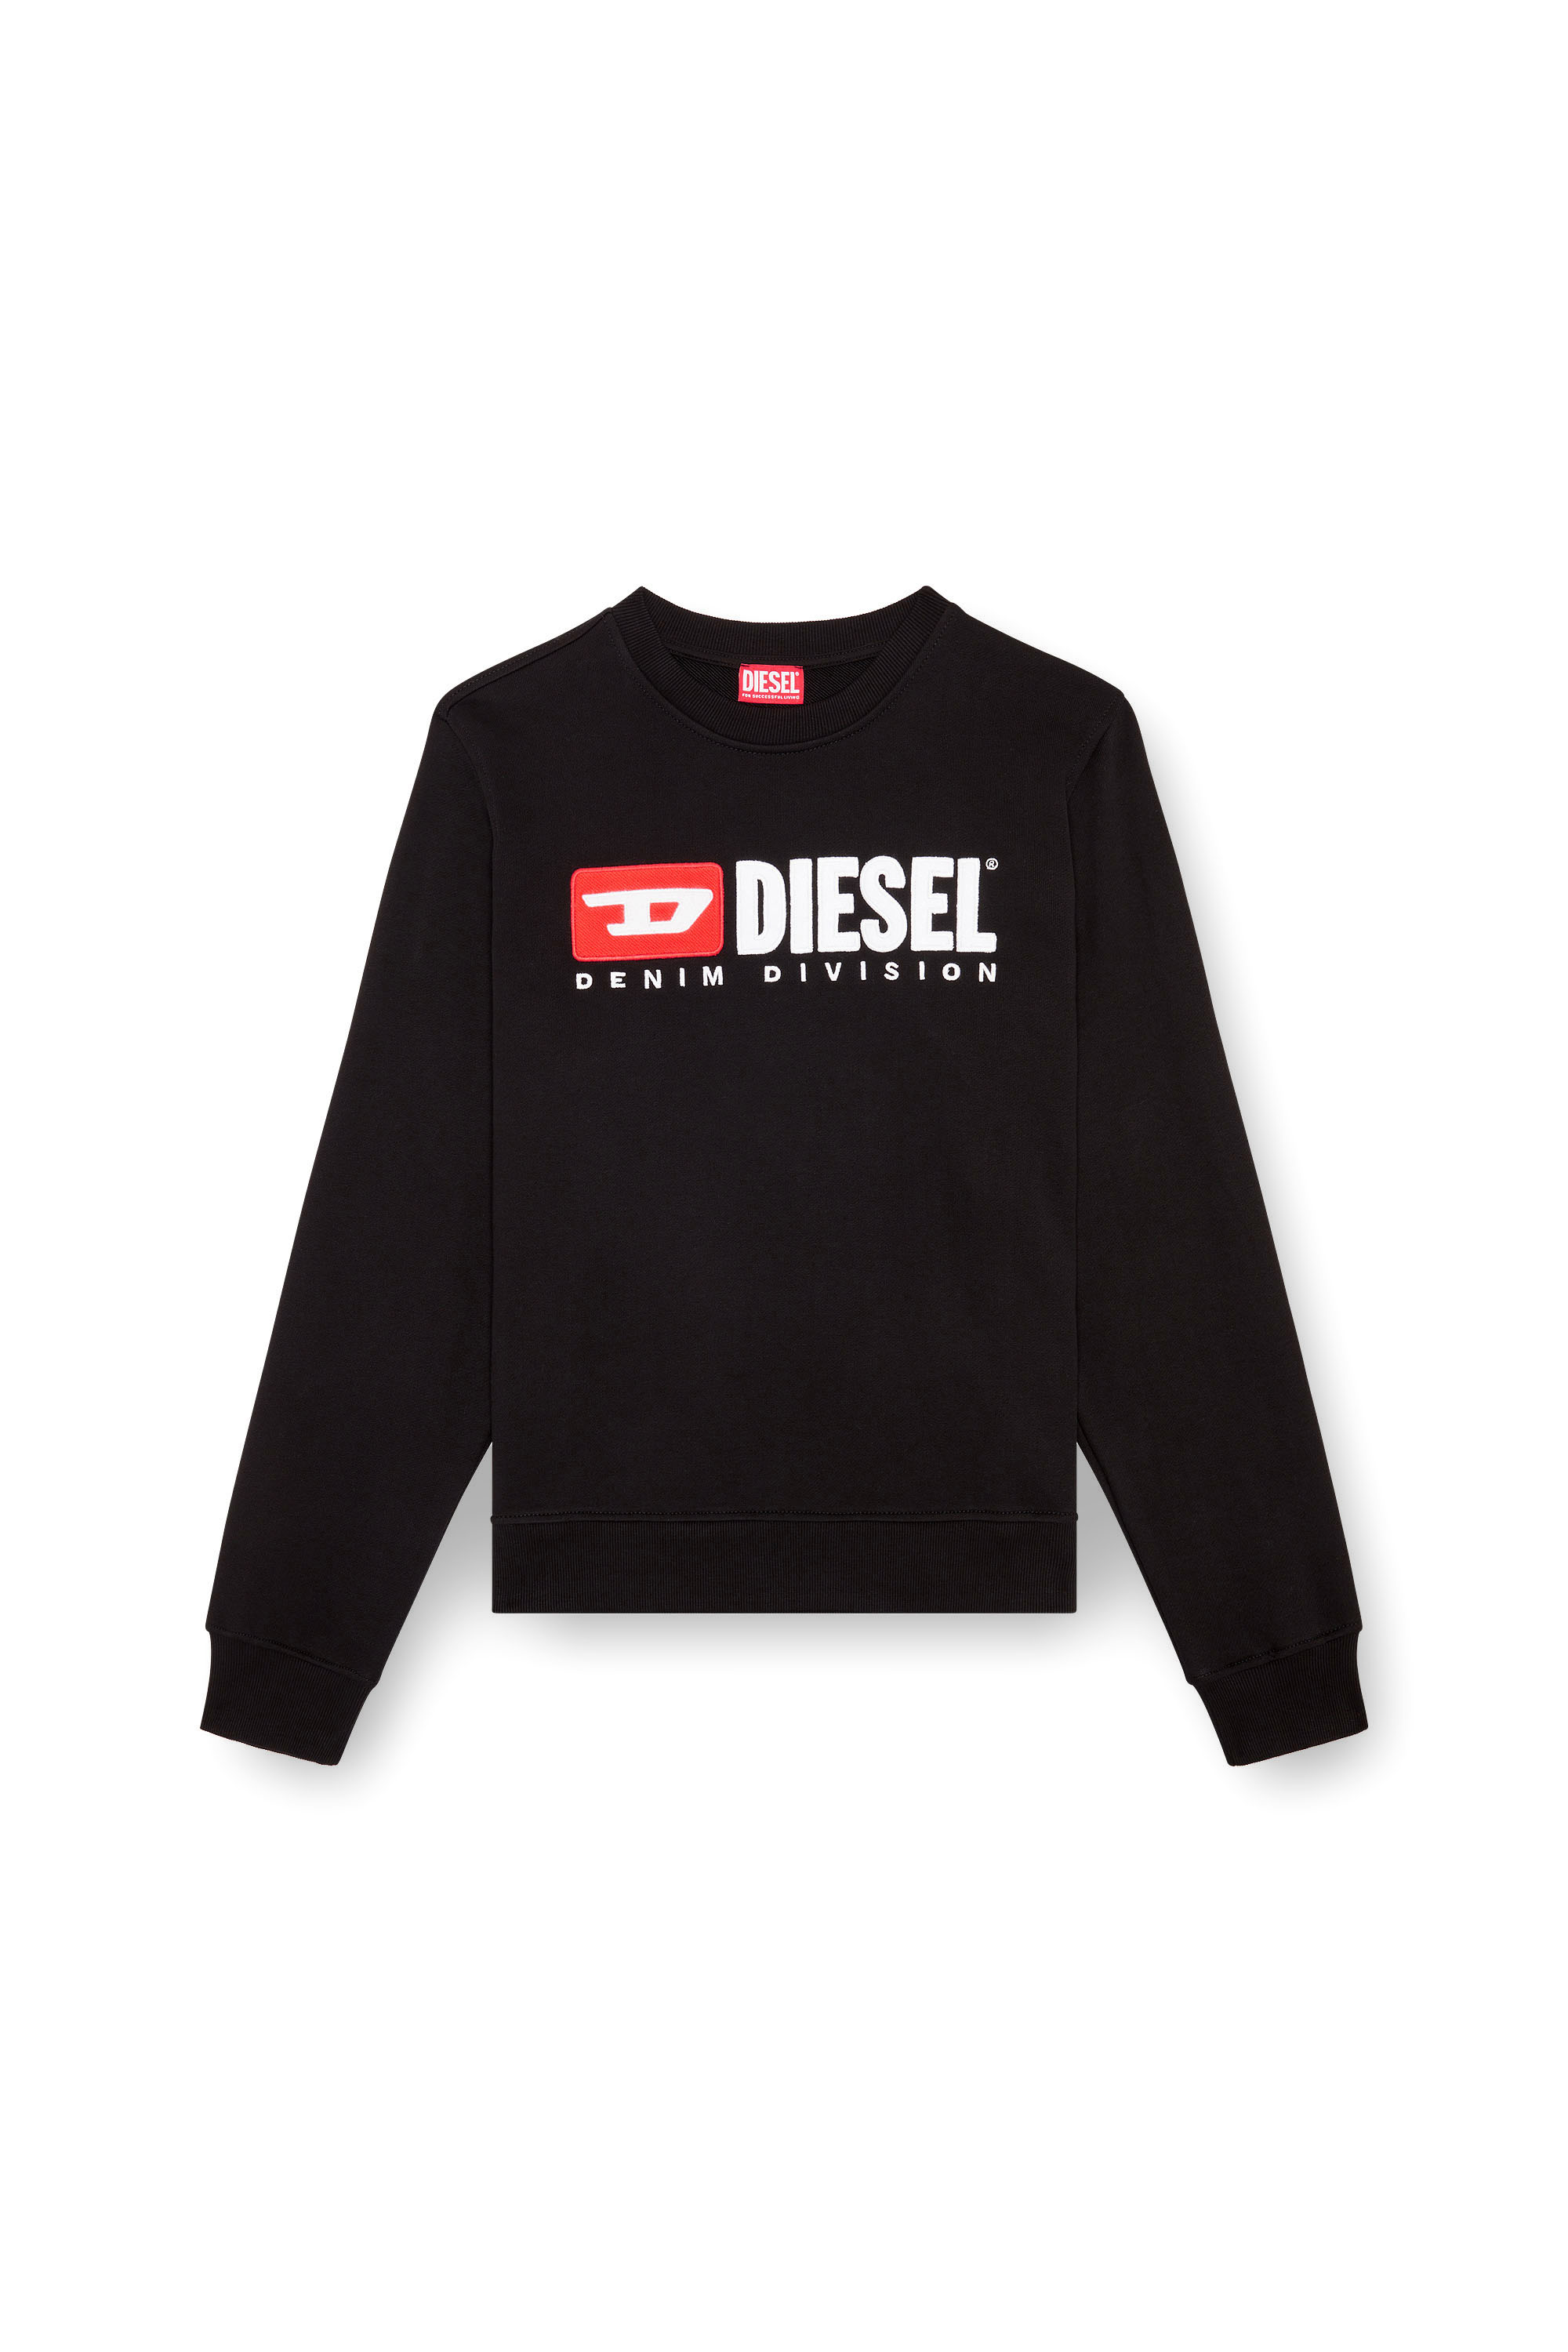 Diesel - S-BOXT-DIV, Herren Sweatshirt mit Denim Division-Logo in Schwarz - Image 3